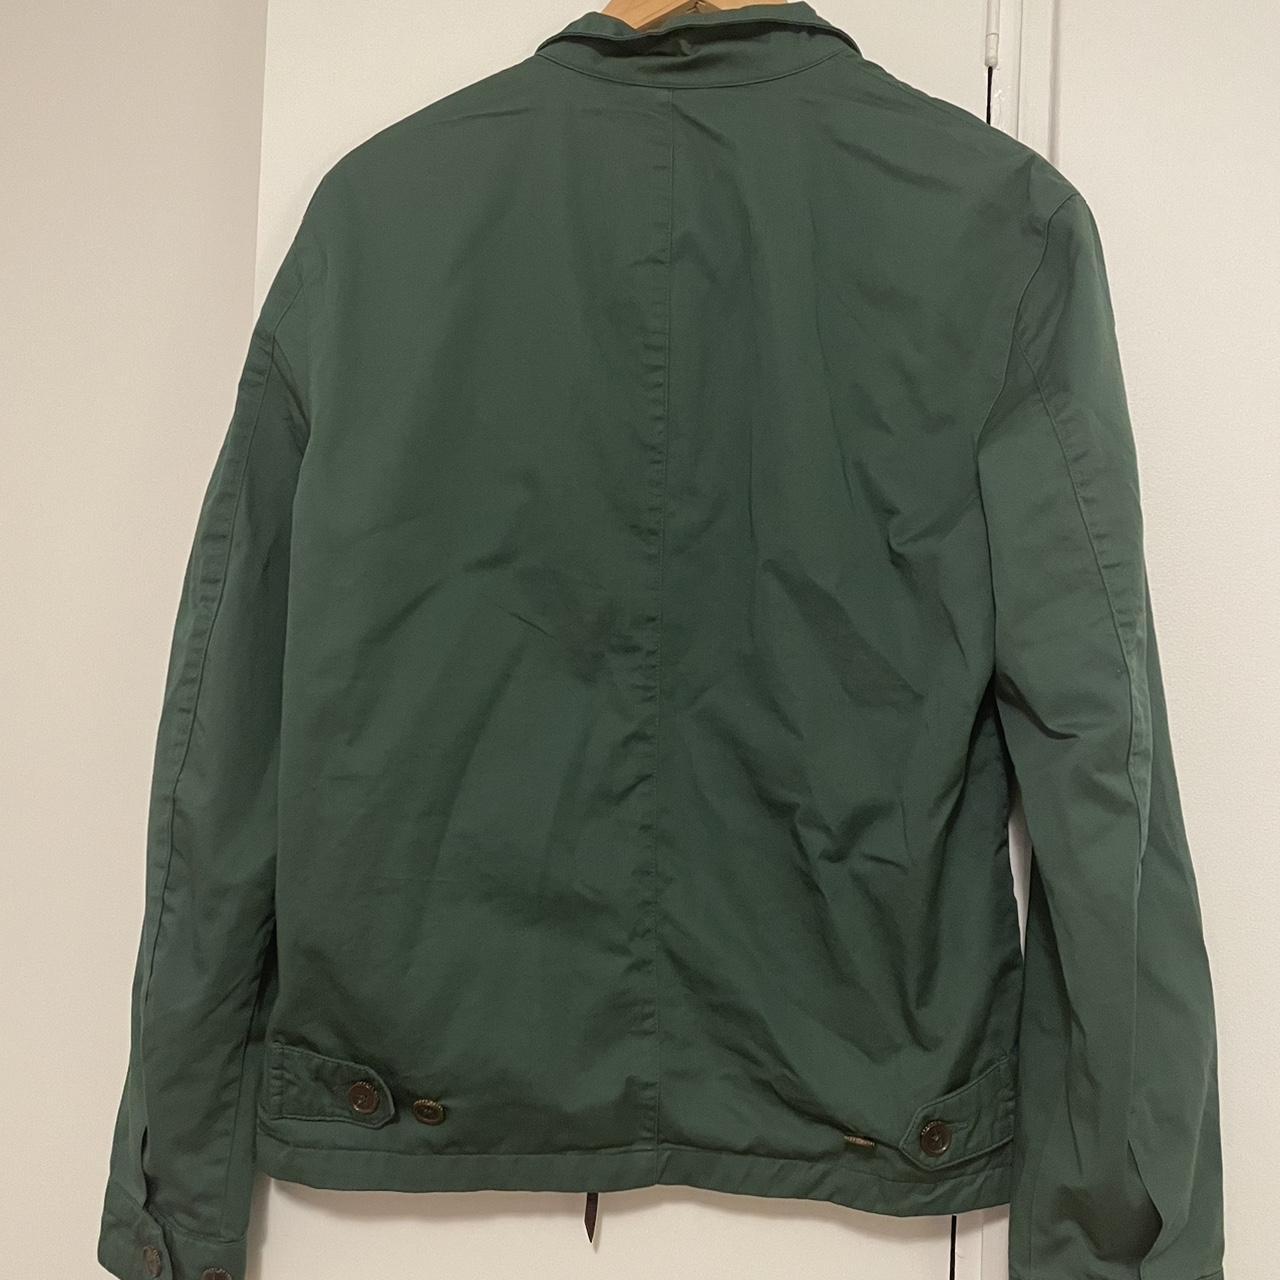 Ralph Lauren green smokers jacket Men’s size S fits... - Depop